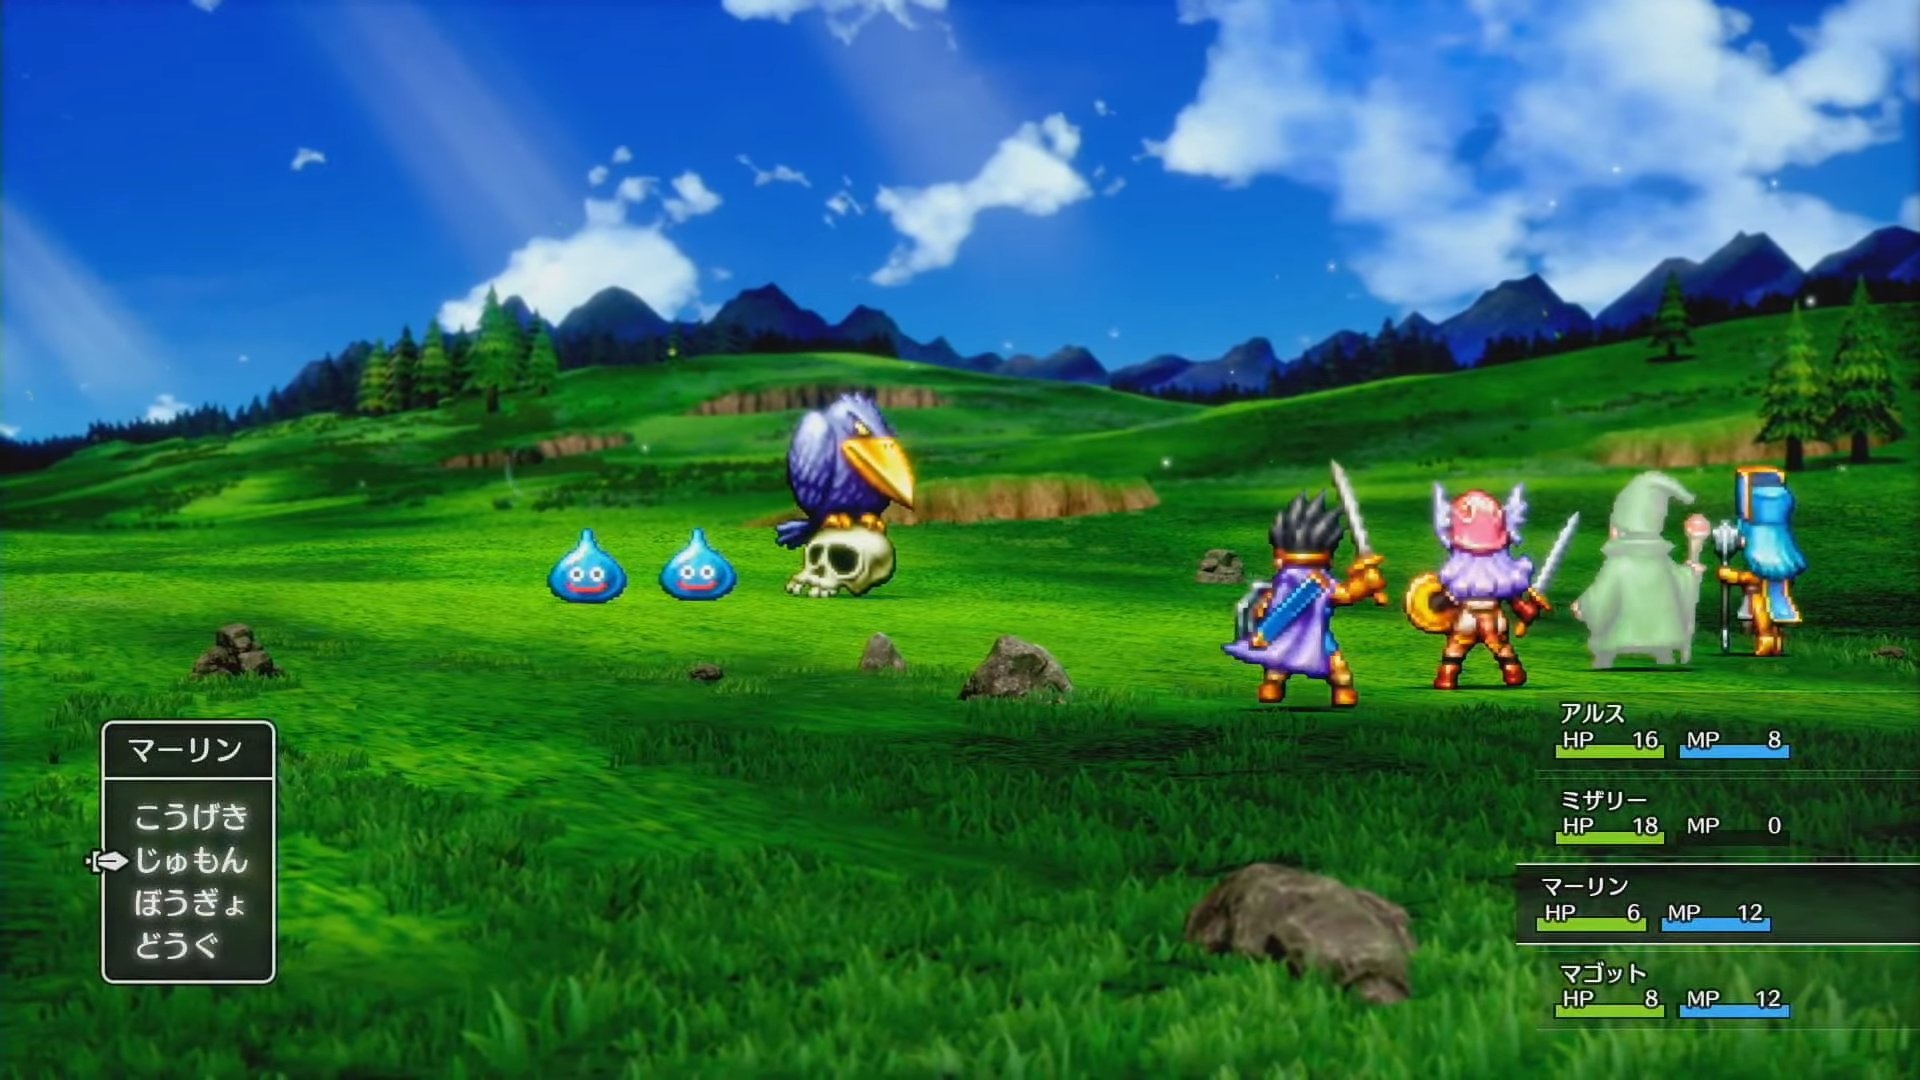 Ремейк Dragon Quest III HD-2D выйдет на консолях и ПК, включая Switch